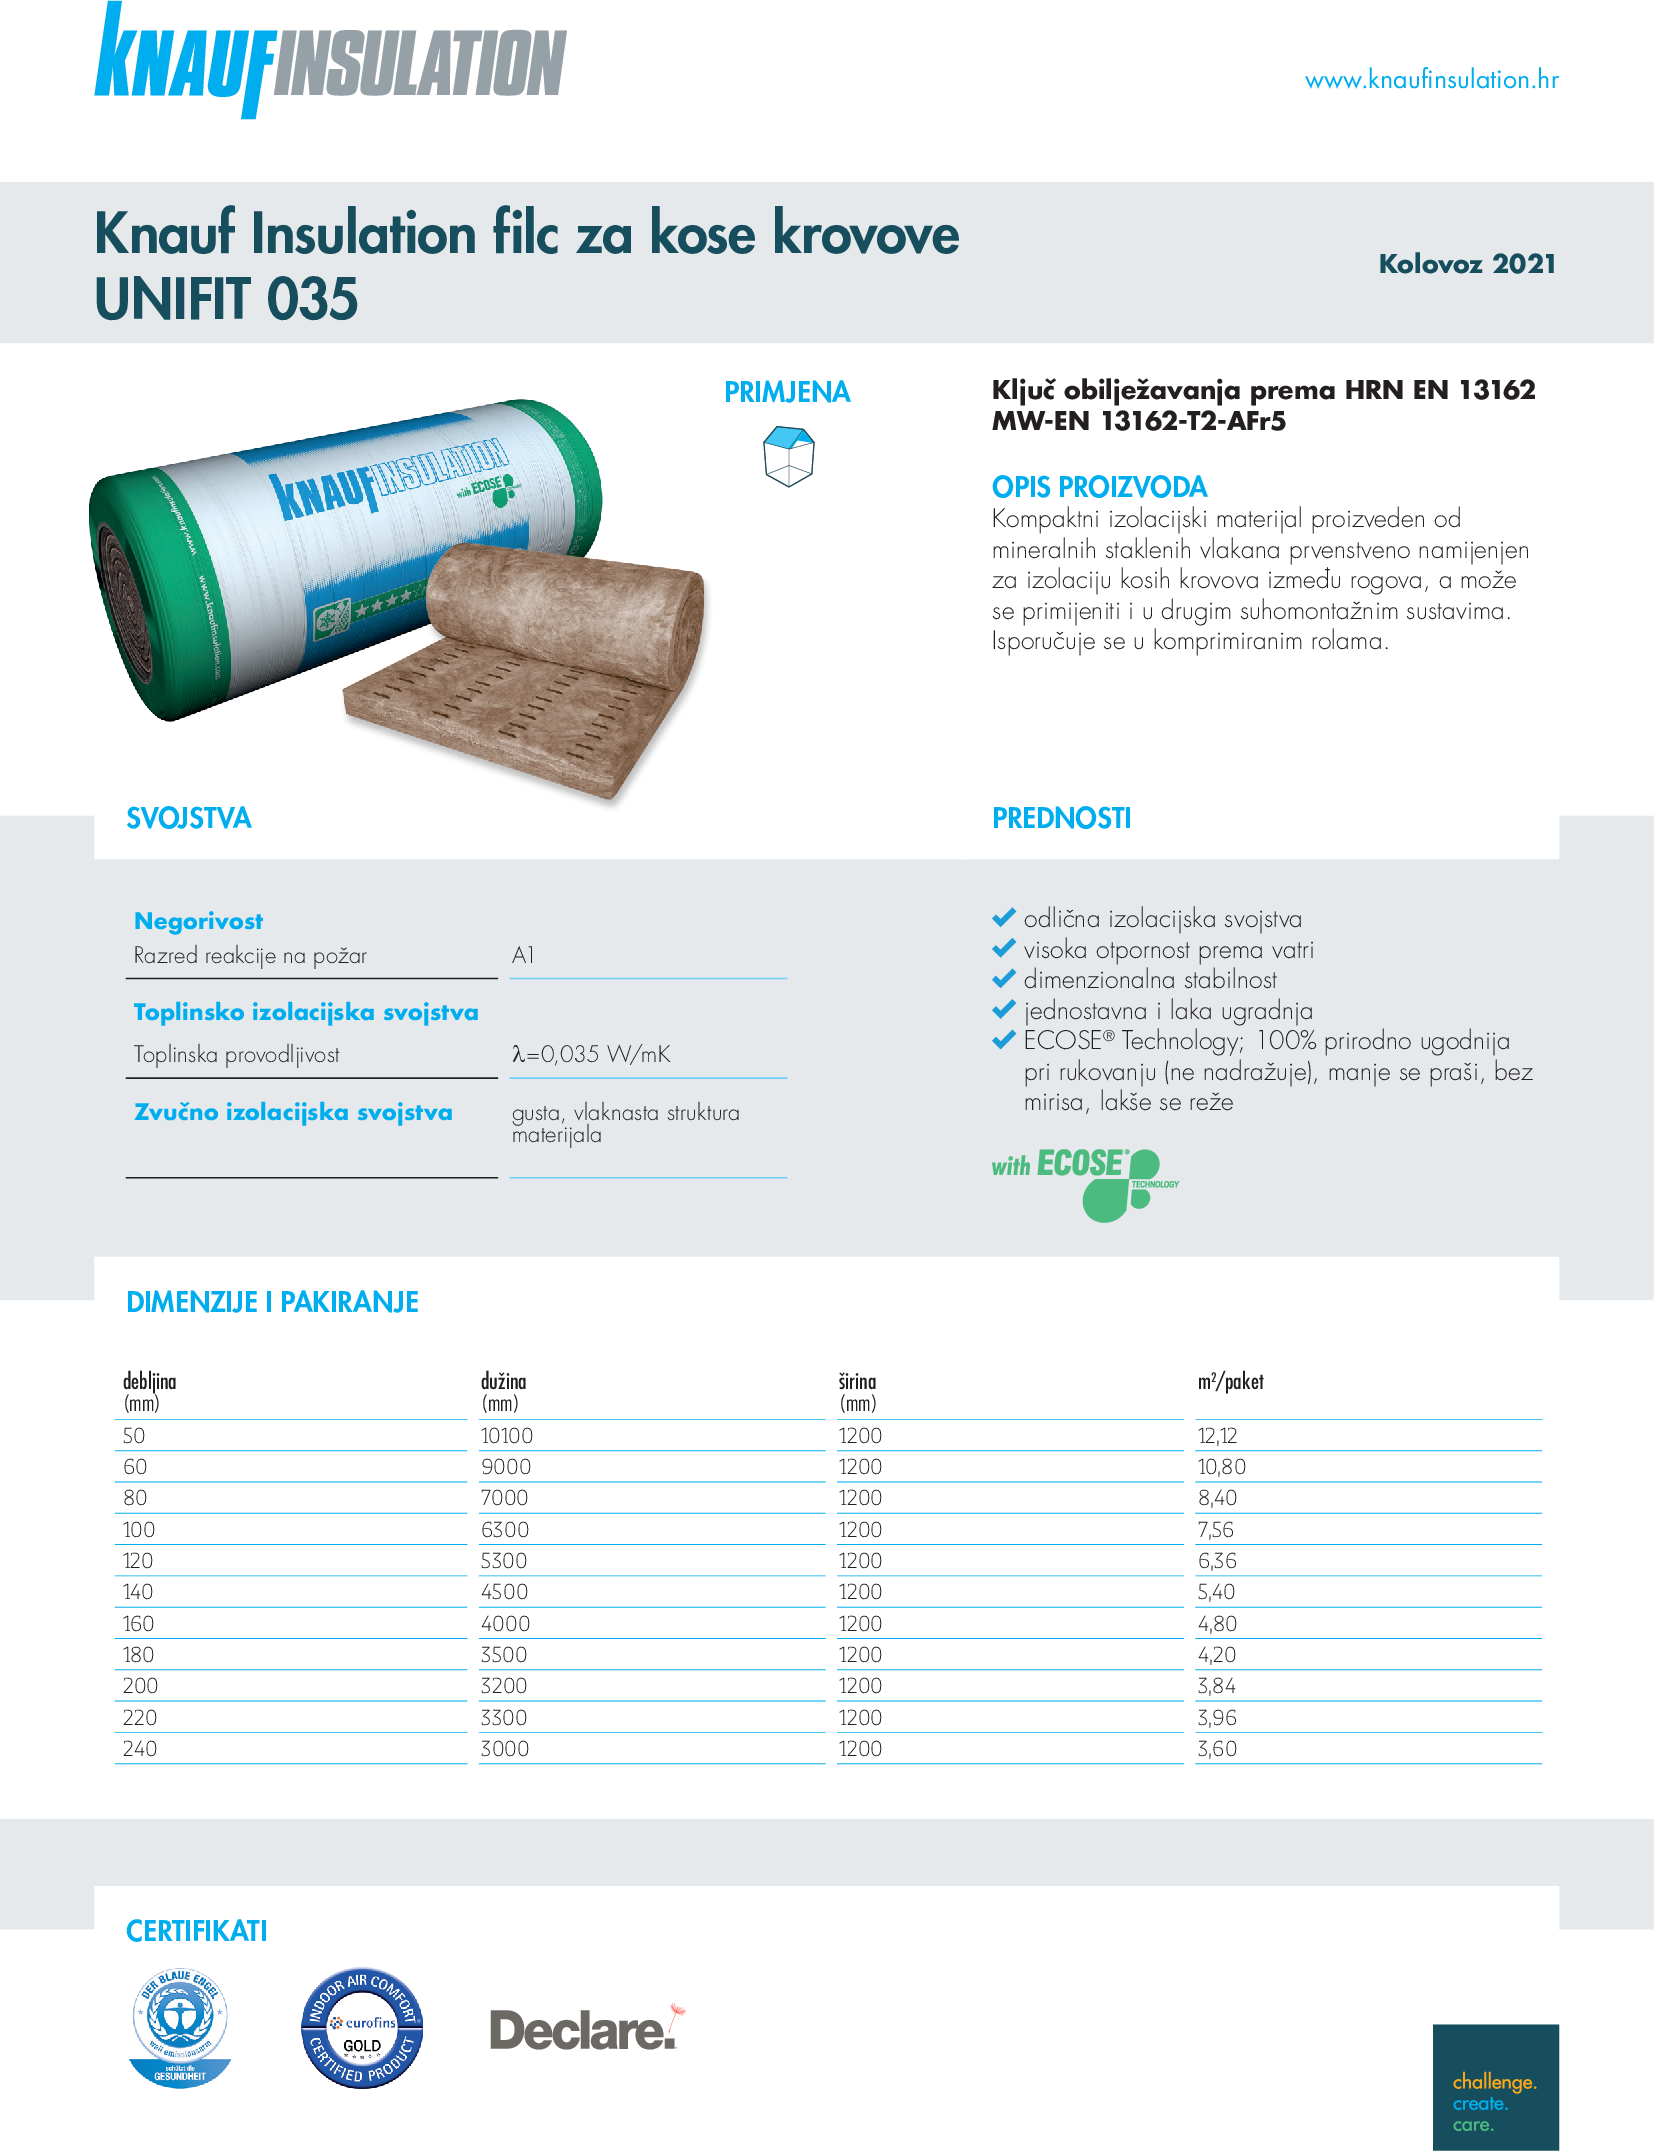 Knauf Insulation filc za kose krovove UNIFIT 035